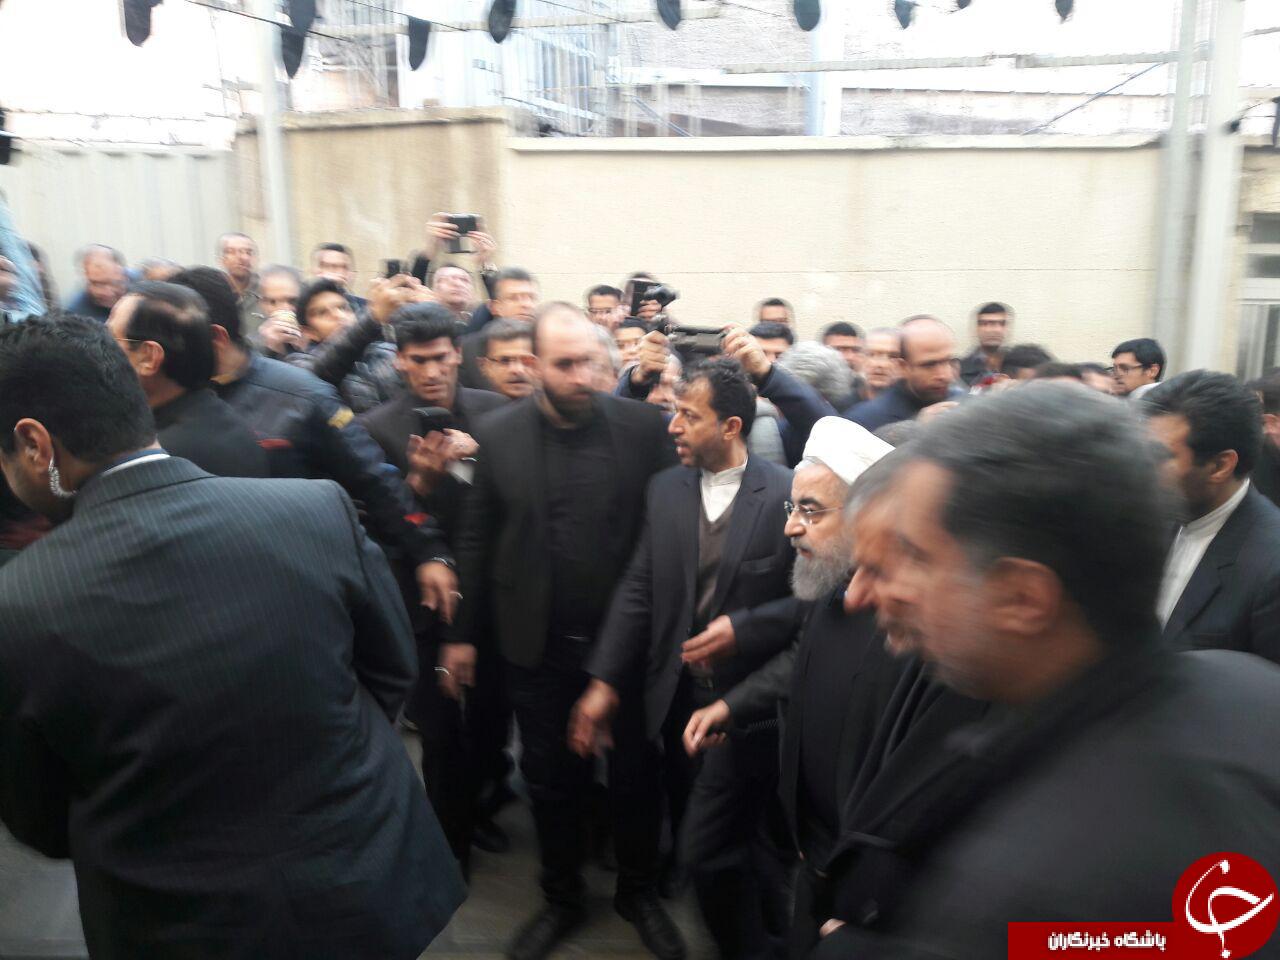 مراسم گرامیداشت هاشمی رفسنجانی آغاز شد +تصاویر